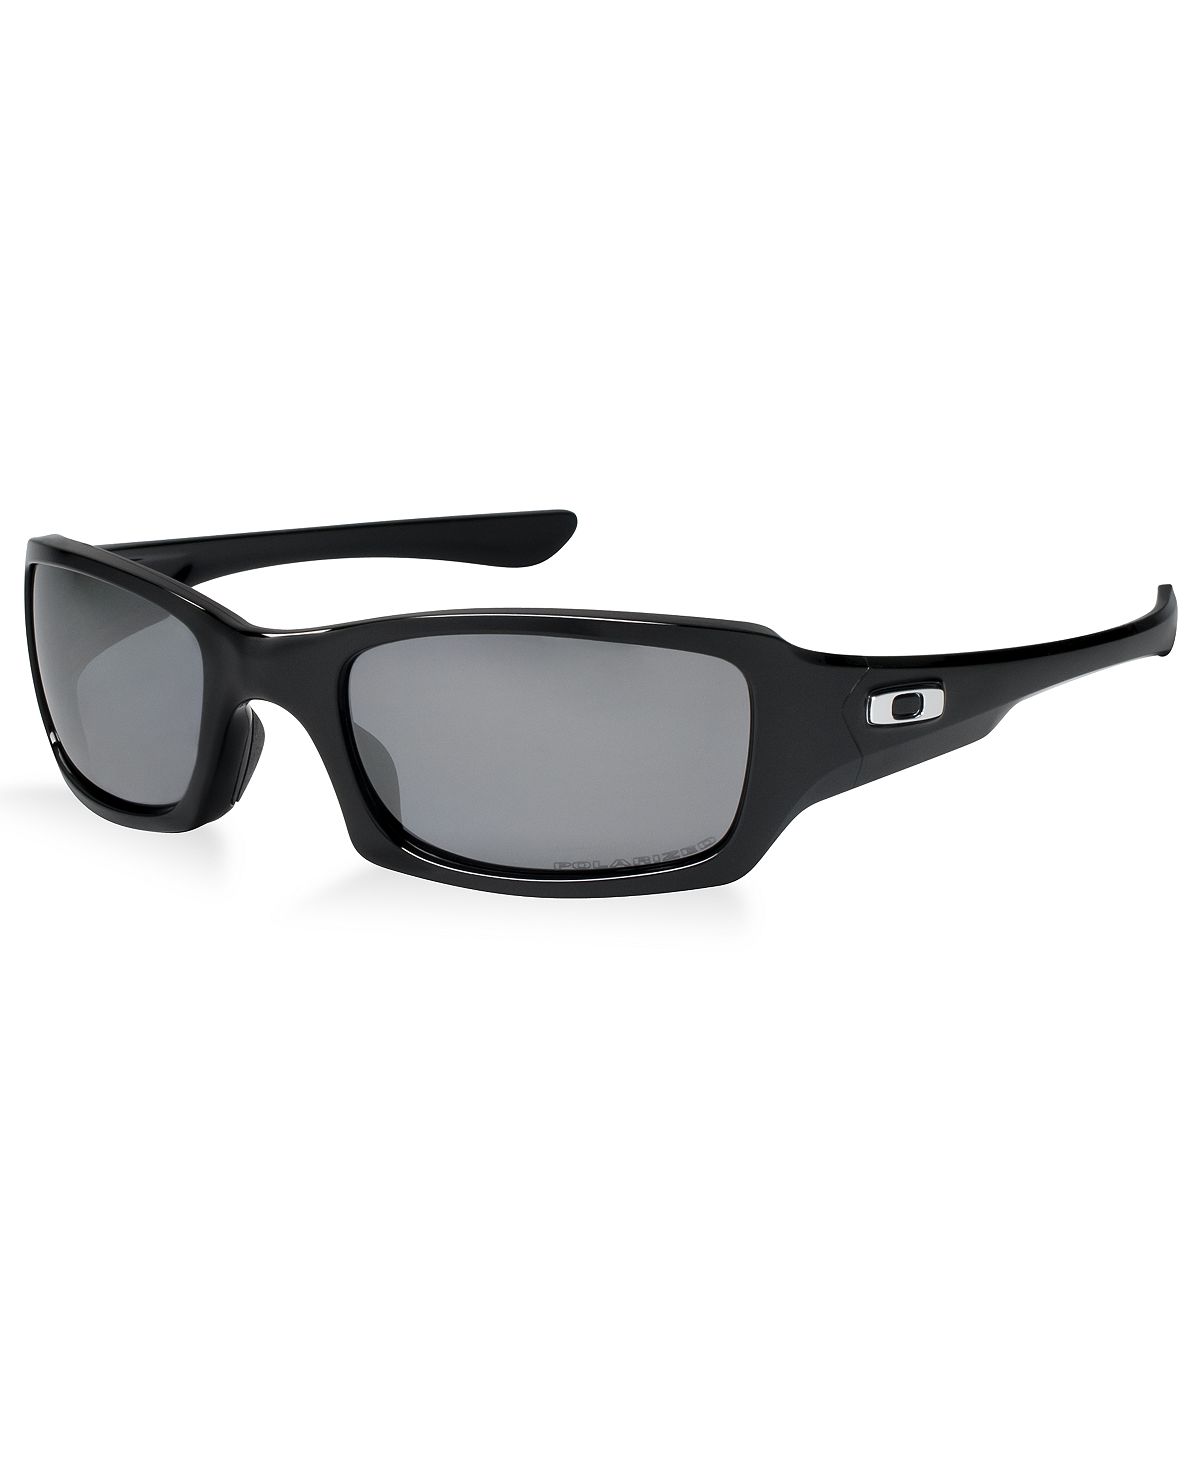 Поляризованные солнцезащитные очки, OO9238 FIVES SQUAREDP Oakley